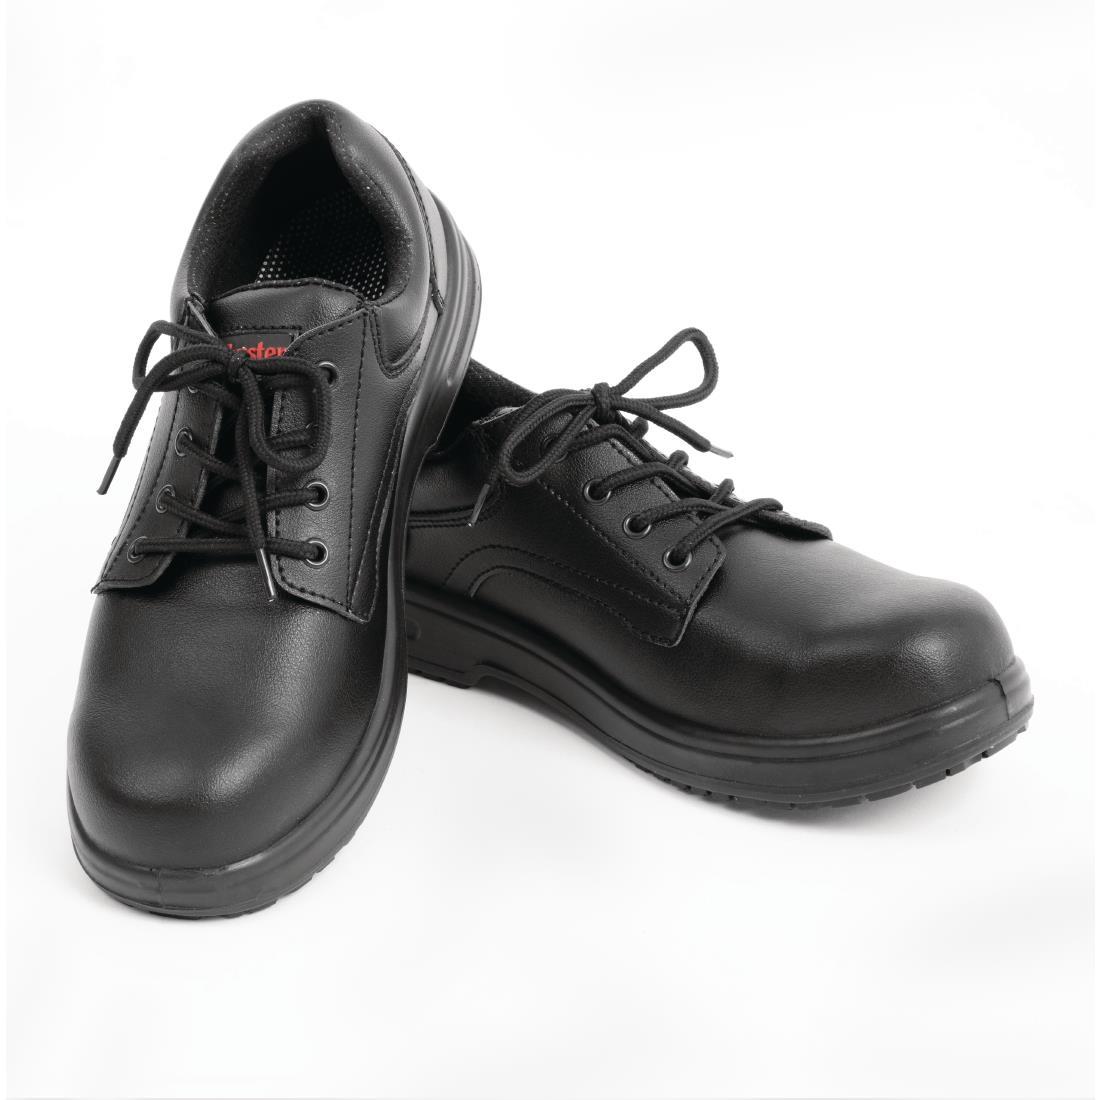 Slipbuster Basic Shoes Slip Resistant Black 36 - BB498-36  - 4